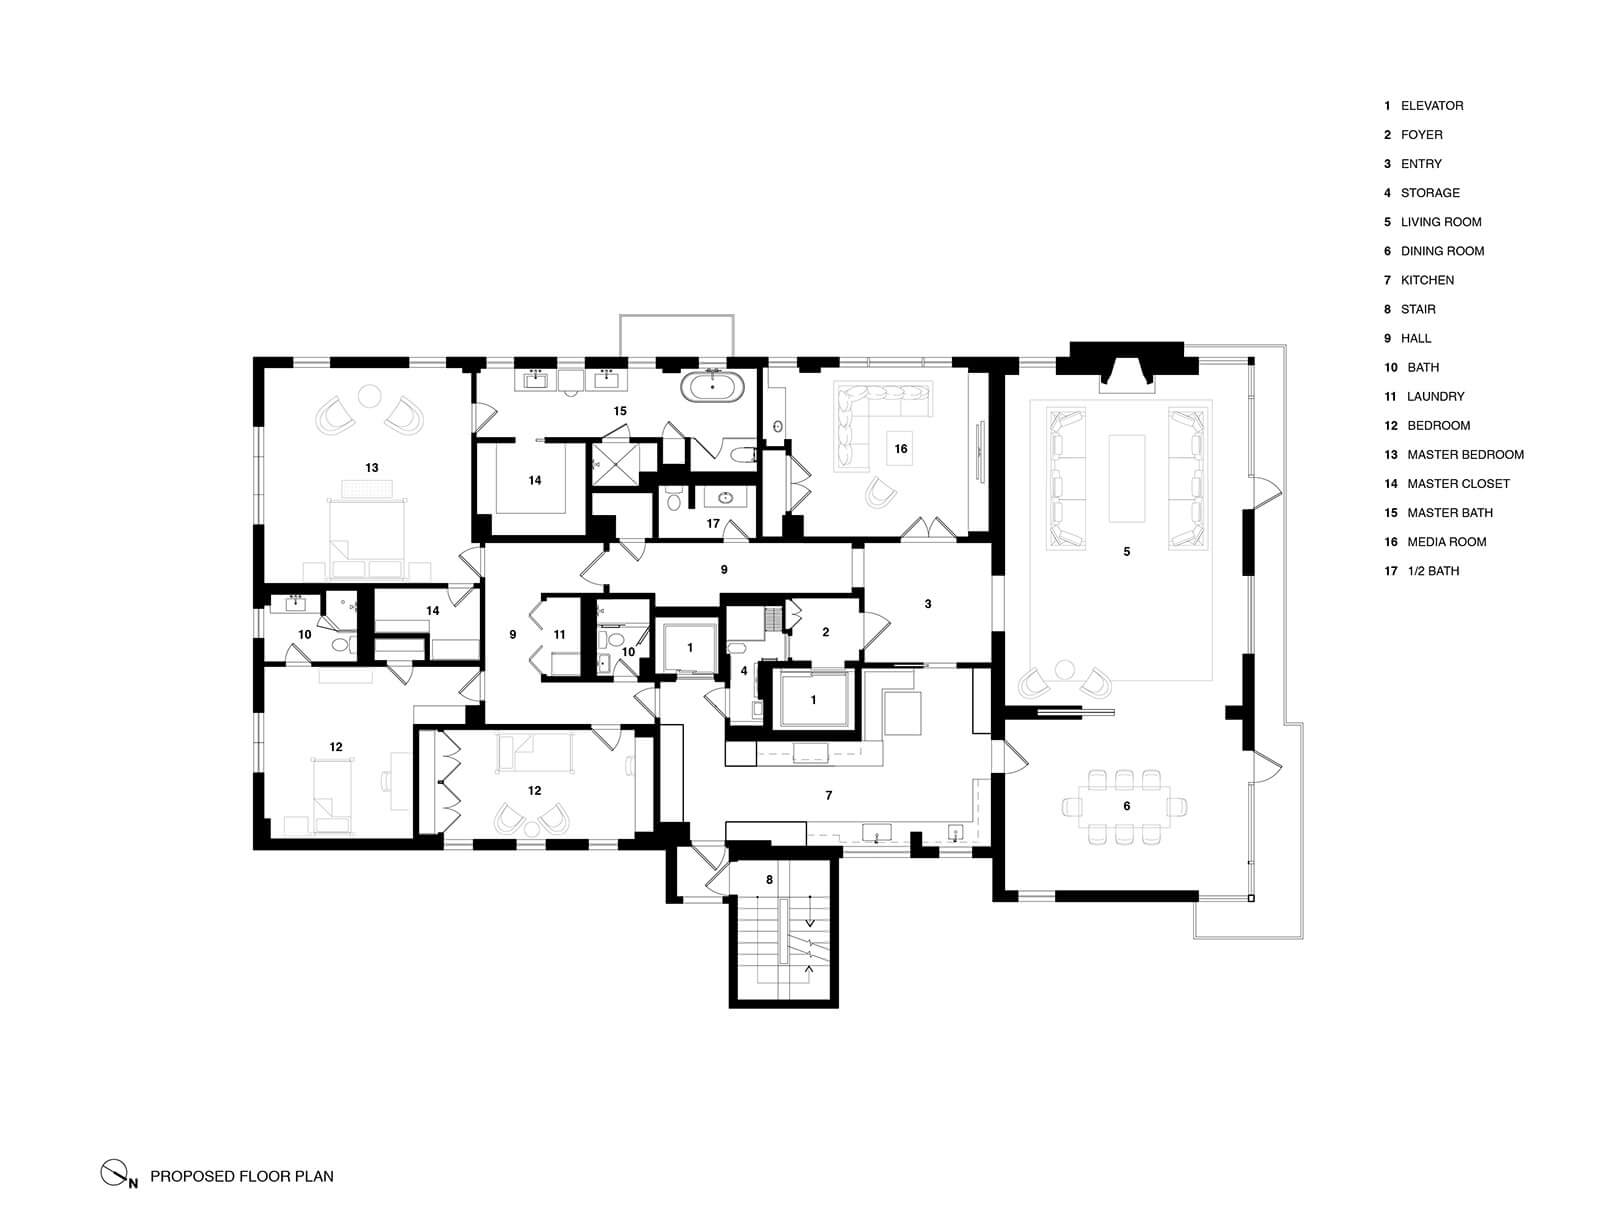 studio vara residential broadway co-op drawing plan 